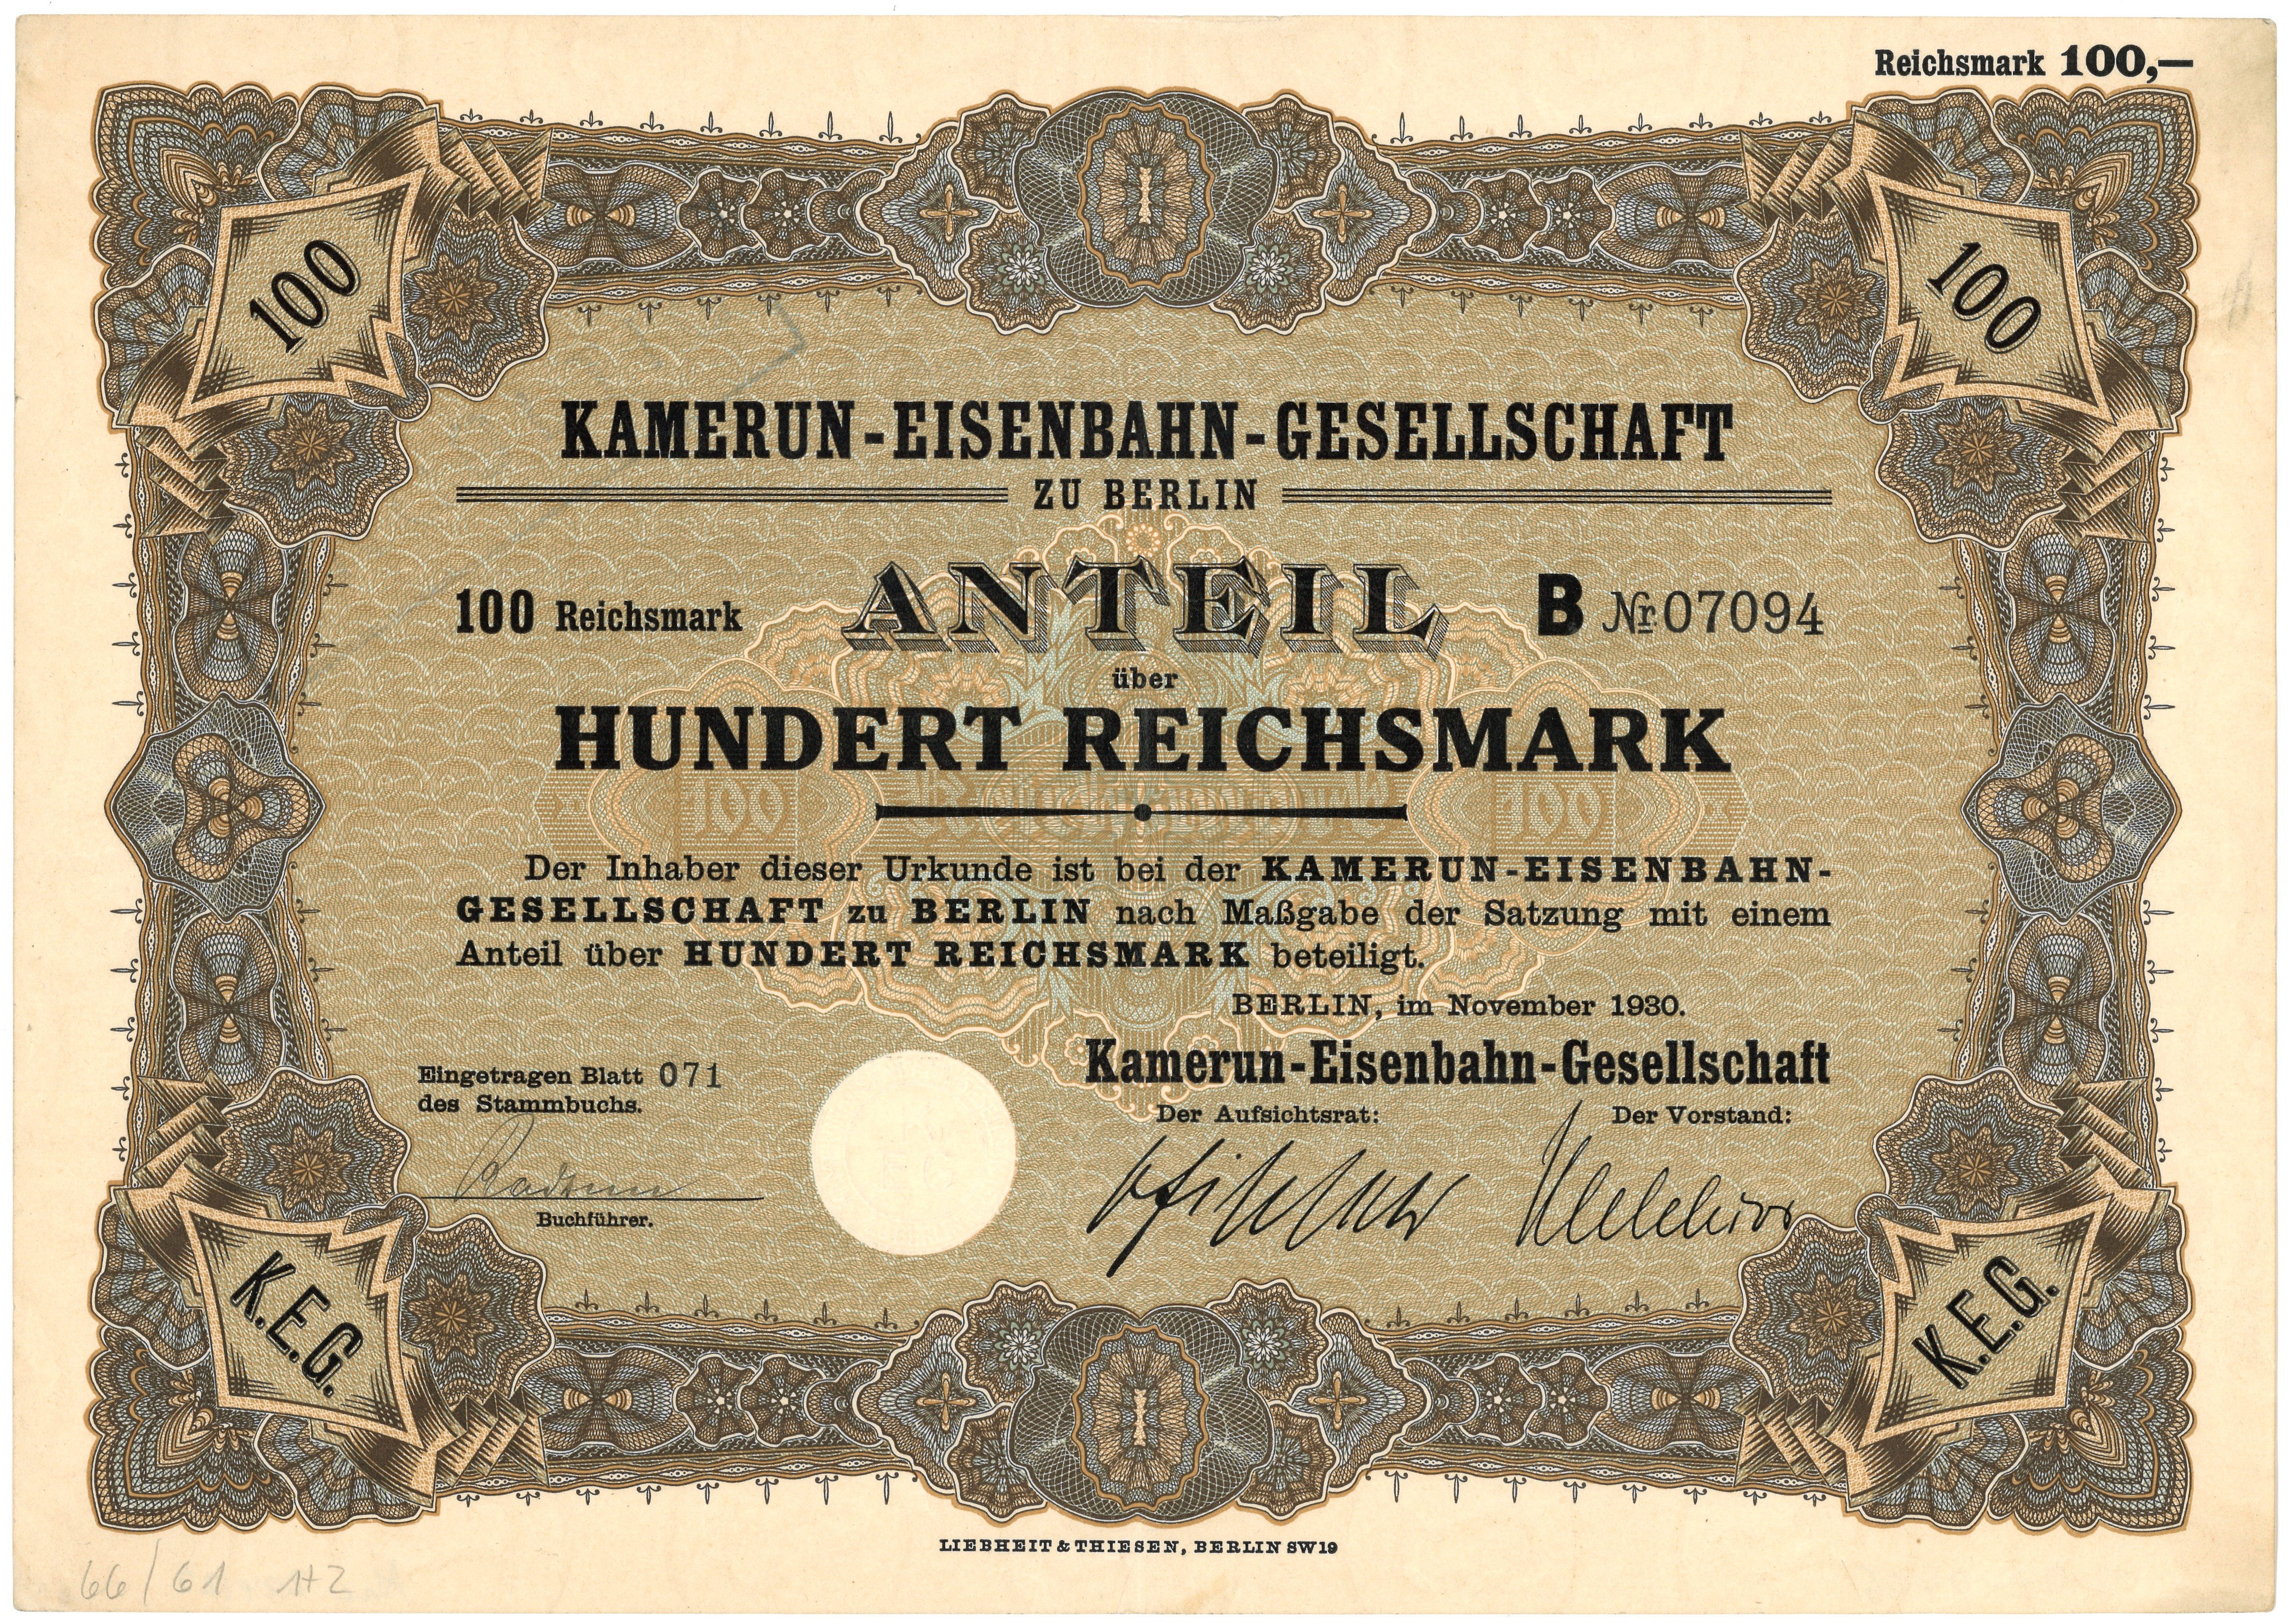 Aktie der Kamerun-Eisenbahn-Gesellschaft über 100 Reichsmark (1930) (Landesgeschichtliche Vereinigung für die Mark Brandenburg e.V., Archiv CC BY)